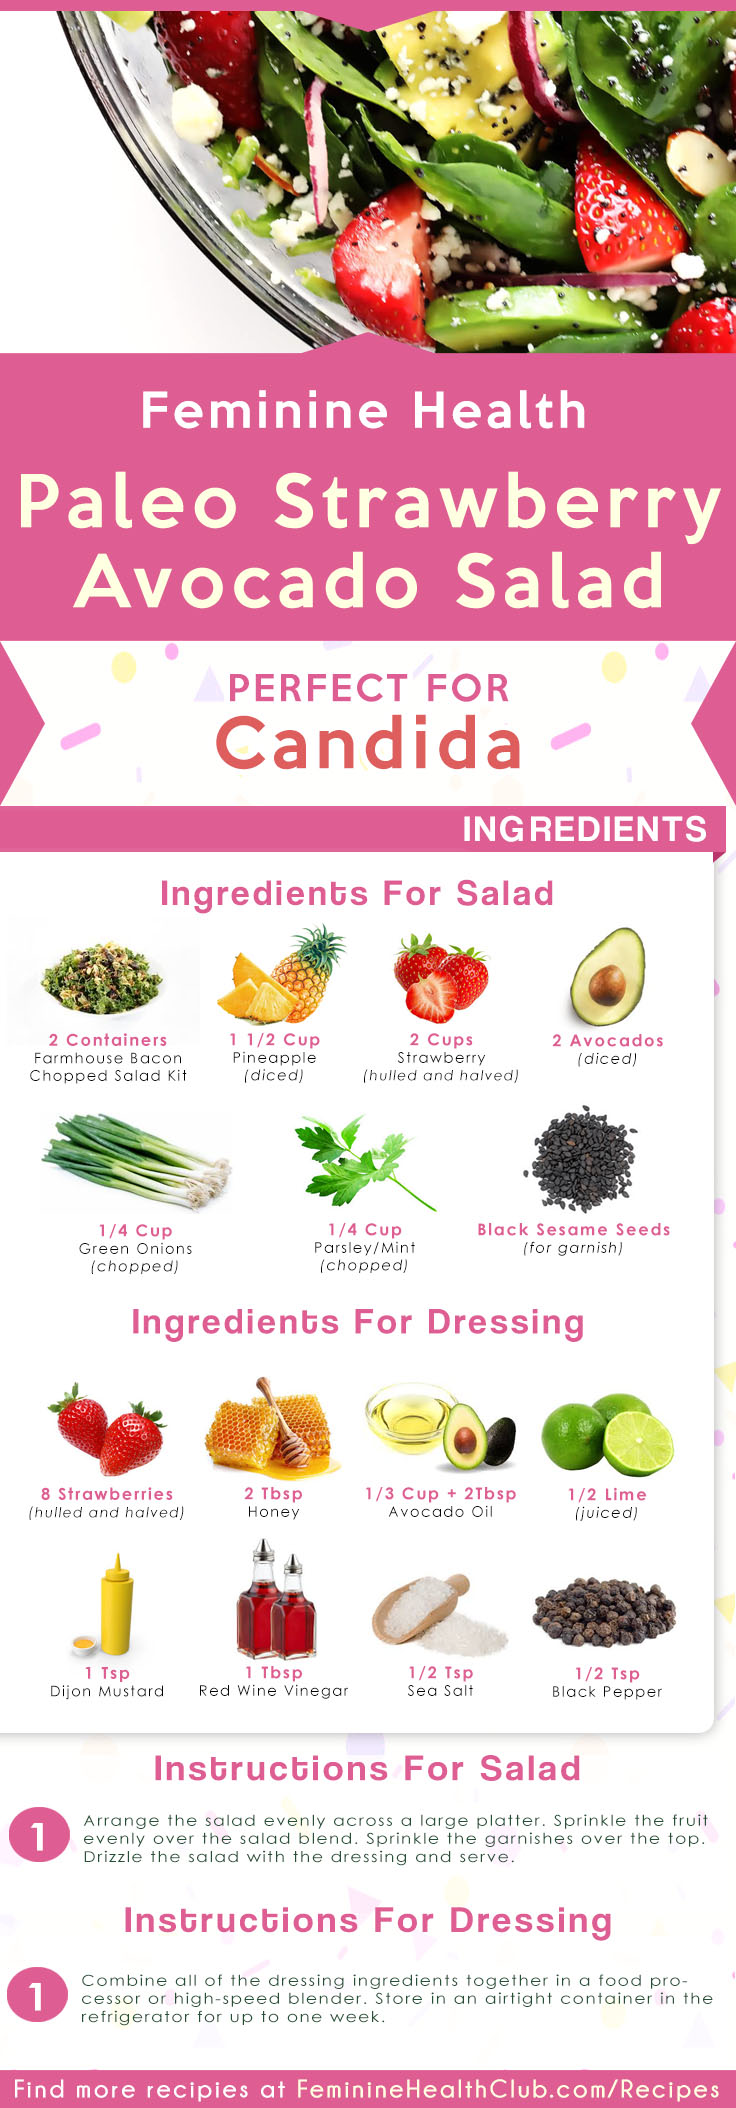 Paleo Strawberry Avocado Salad Recipe For Candida